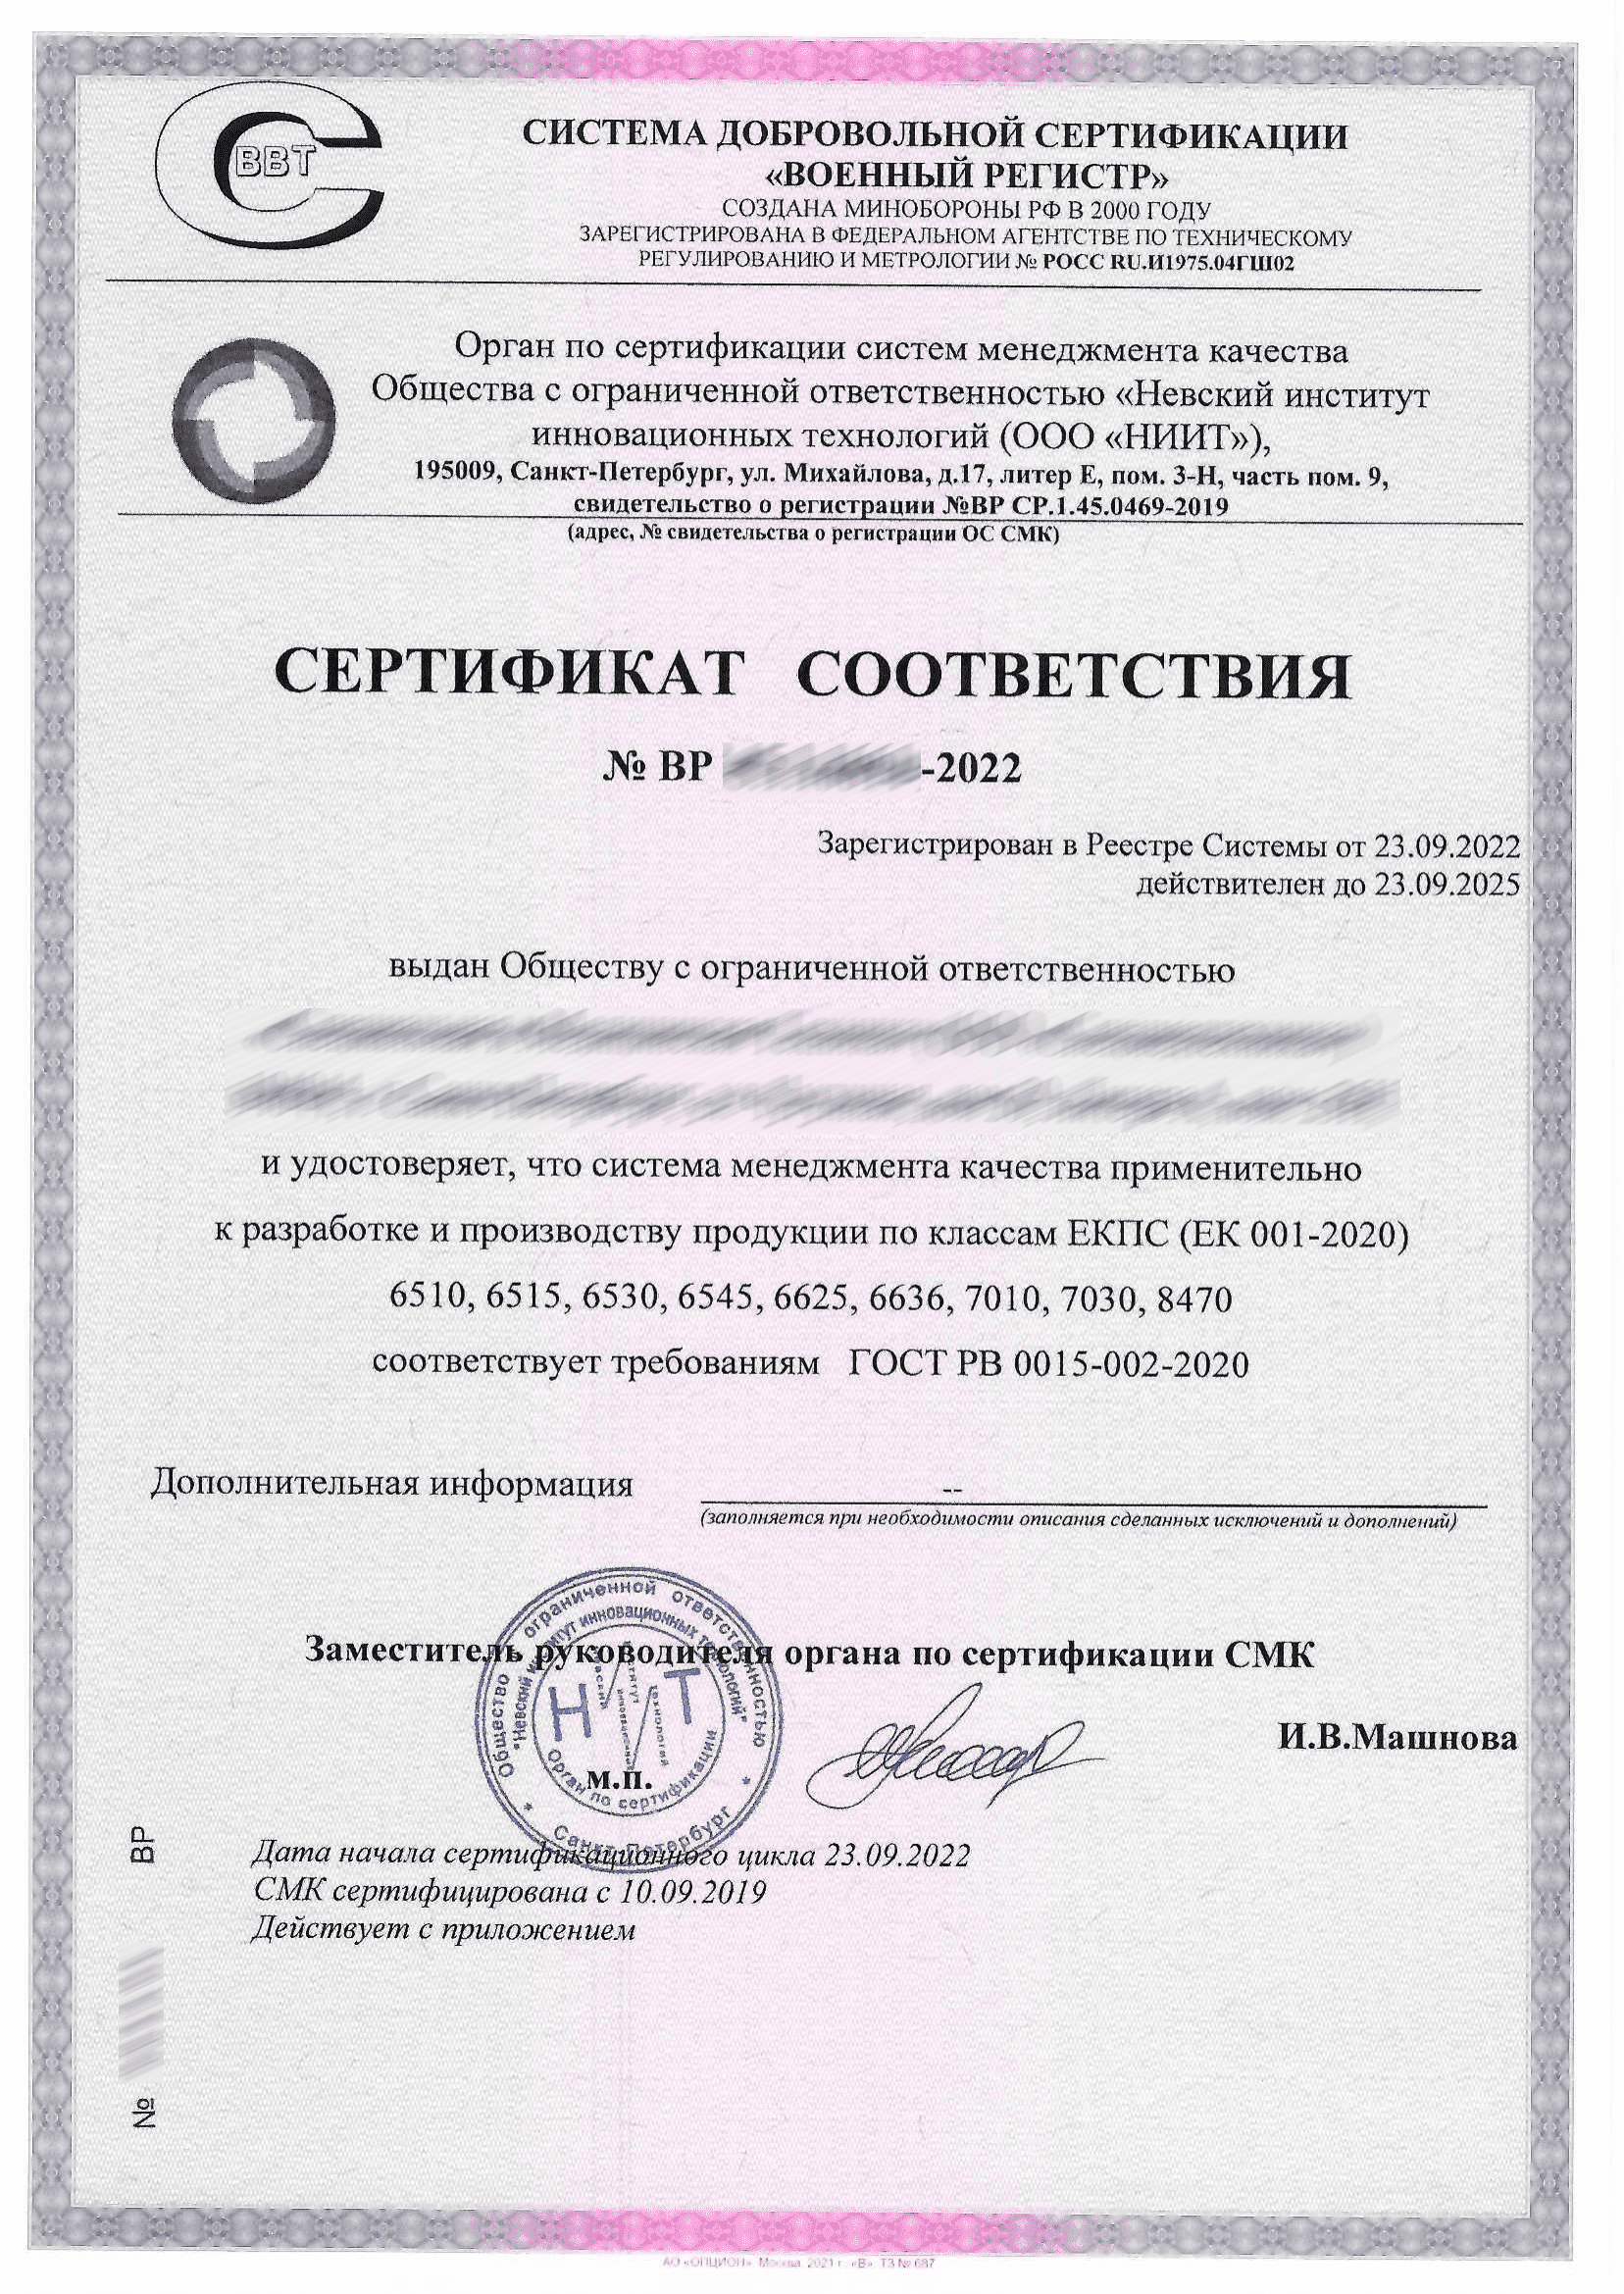 Сертификат СДС военный регистр. Гост рв 0015 301 2020